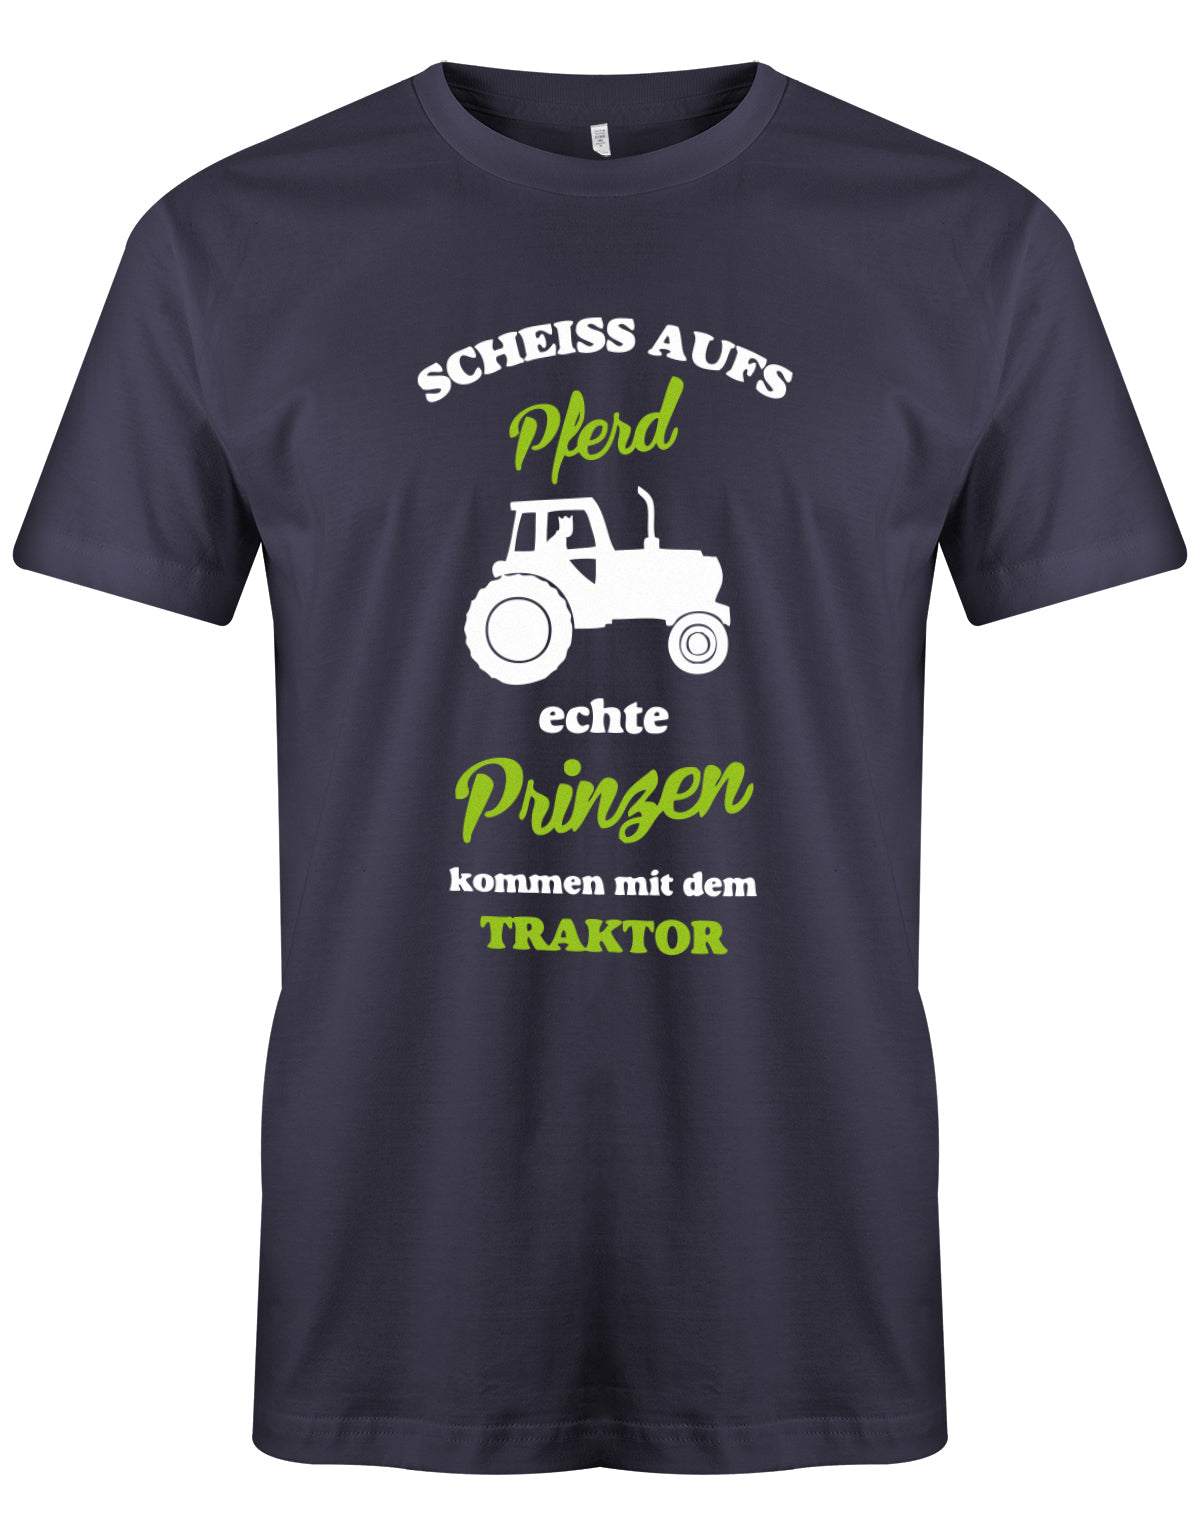 Landwirtschaft Shirt Männer - Scheiss aufs Pferd, echte Prinzen kommen mit dem Traktor.   Navy